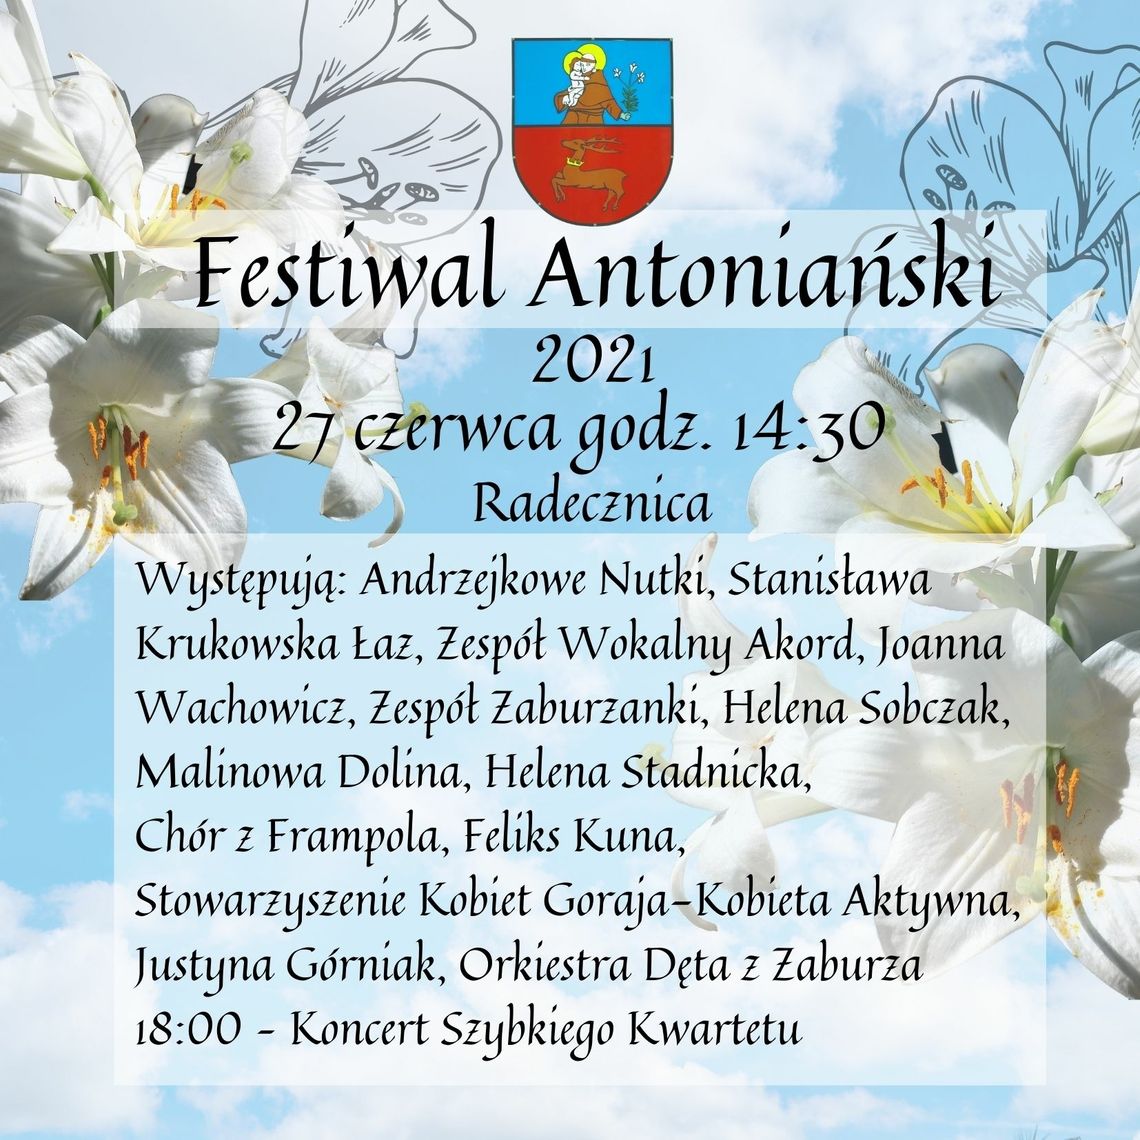 Festiwal Antoniański w Radecznicy 